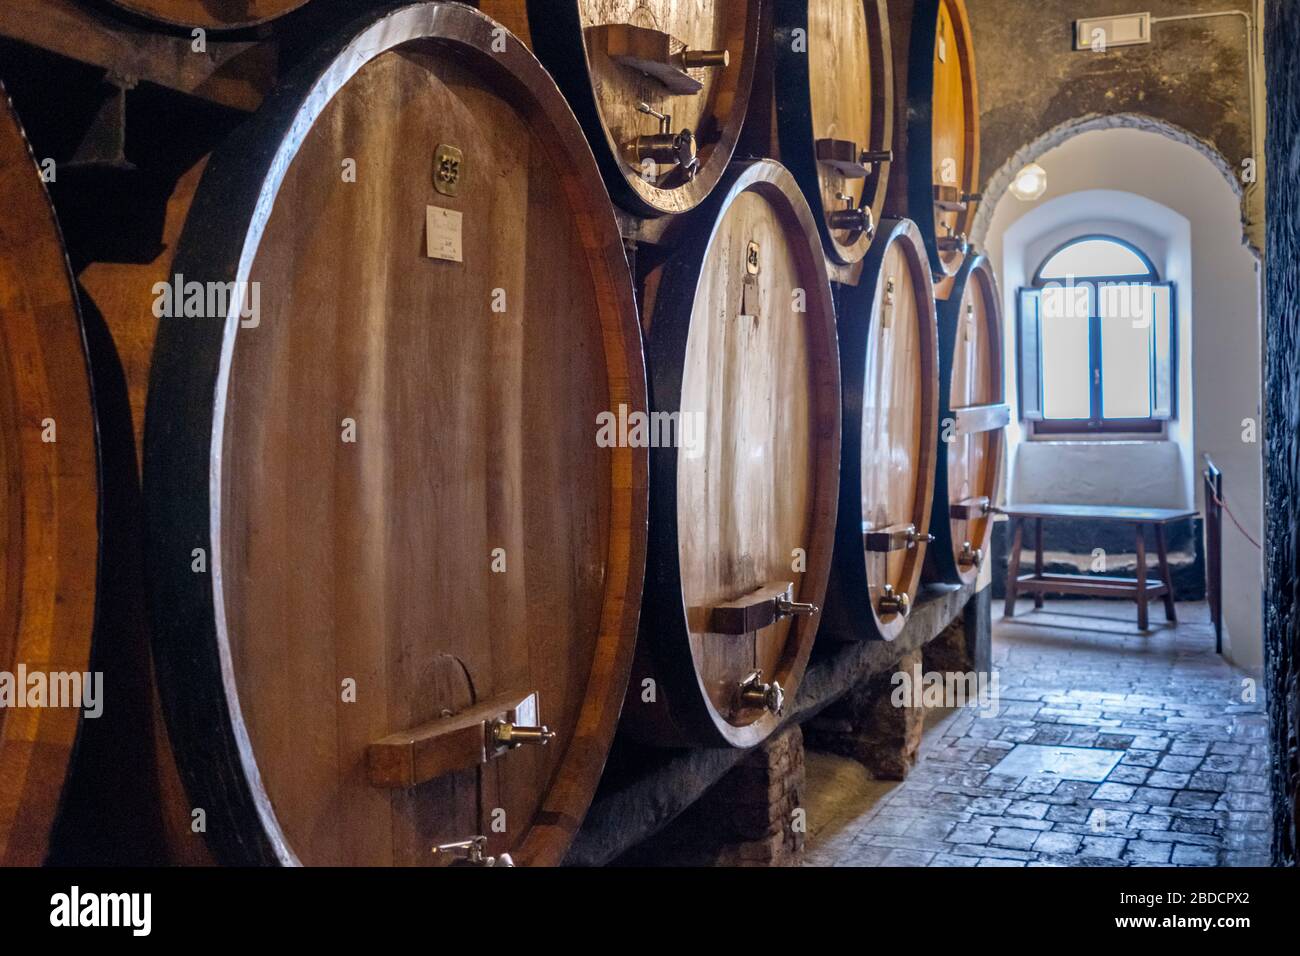 Montepulciano winery, Tuscany, Italy Stock Photo